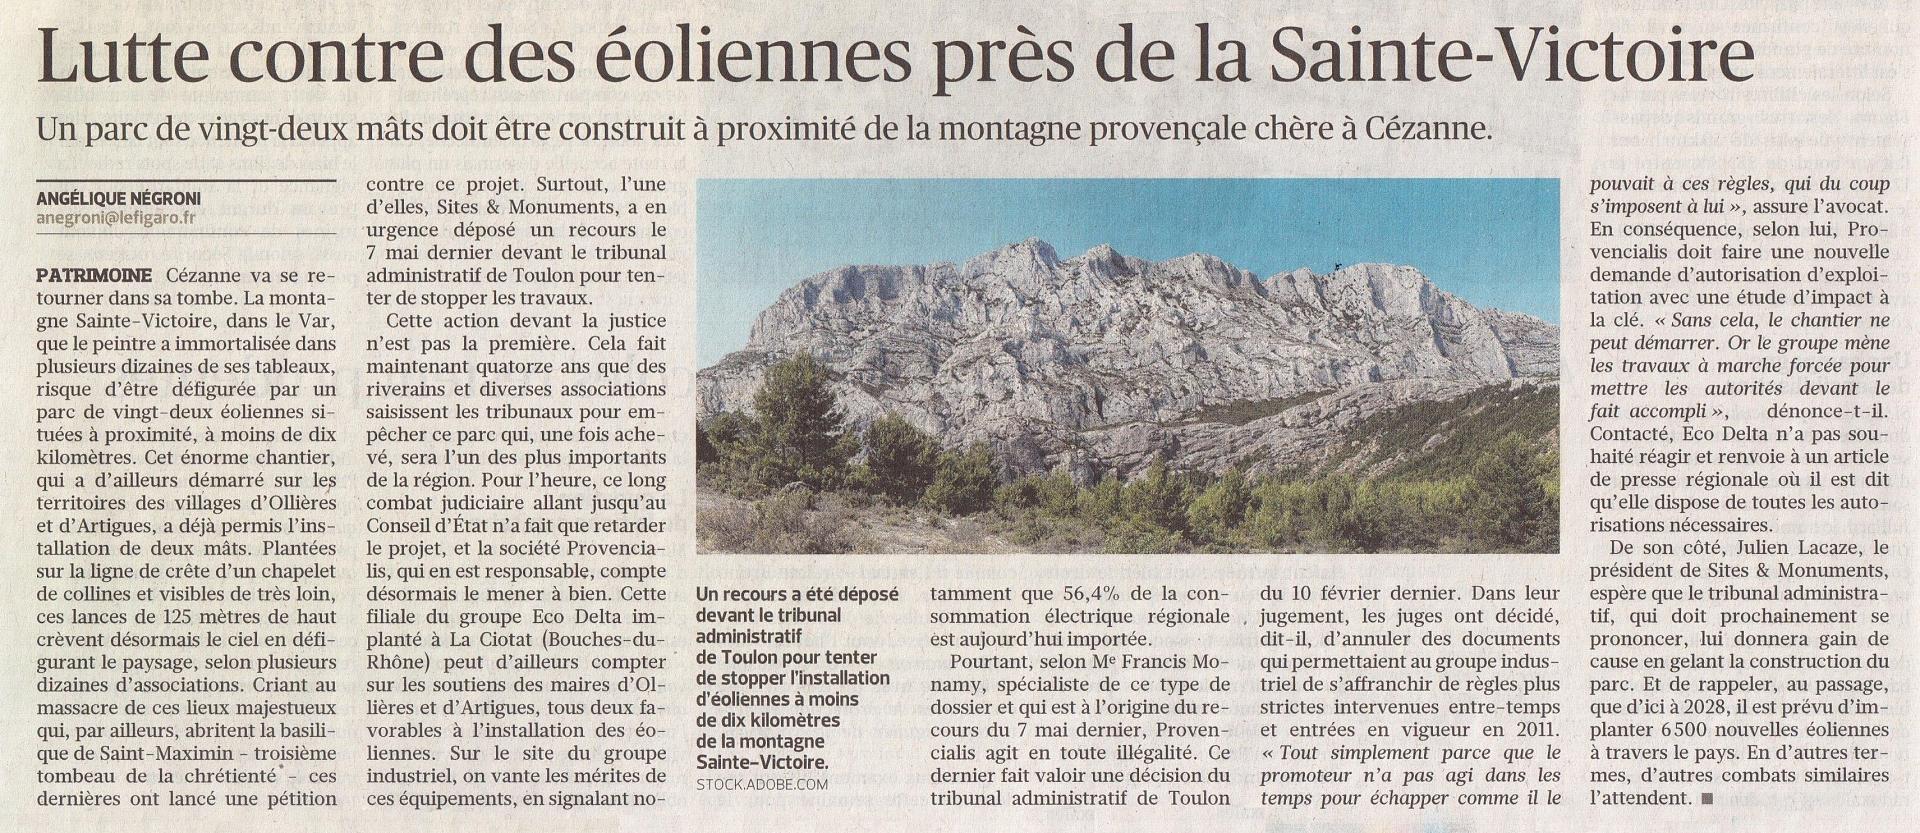 Le Figaro du 14 mai 2020 p. 12 éolien Sainte-Victoire